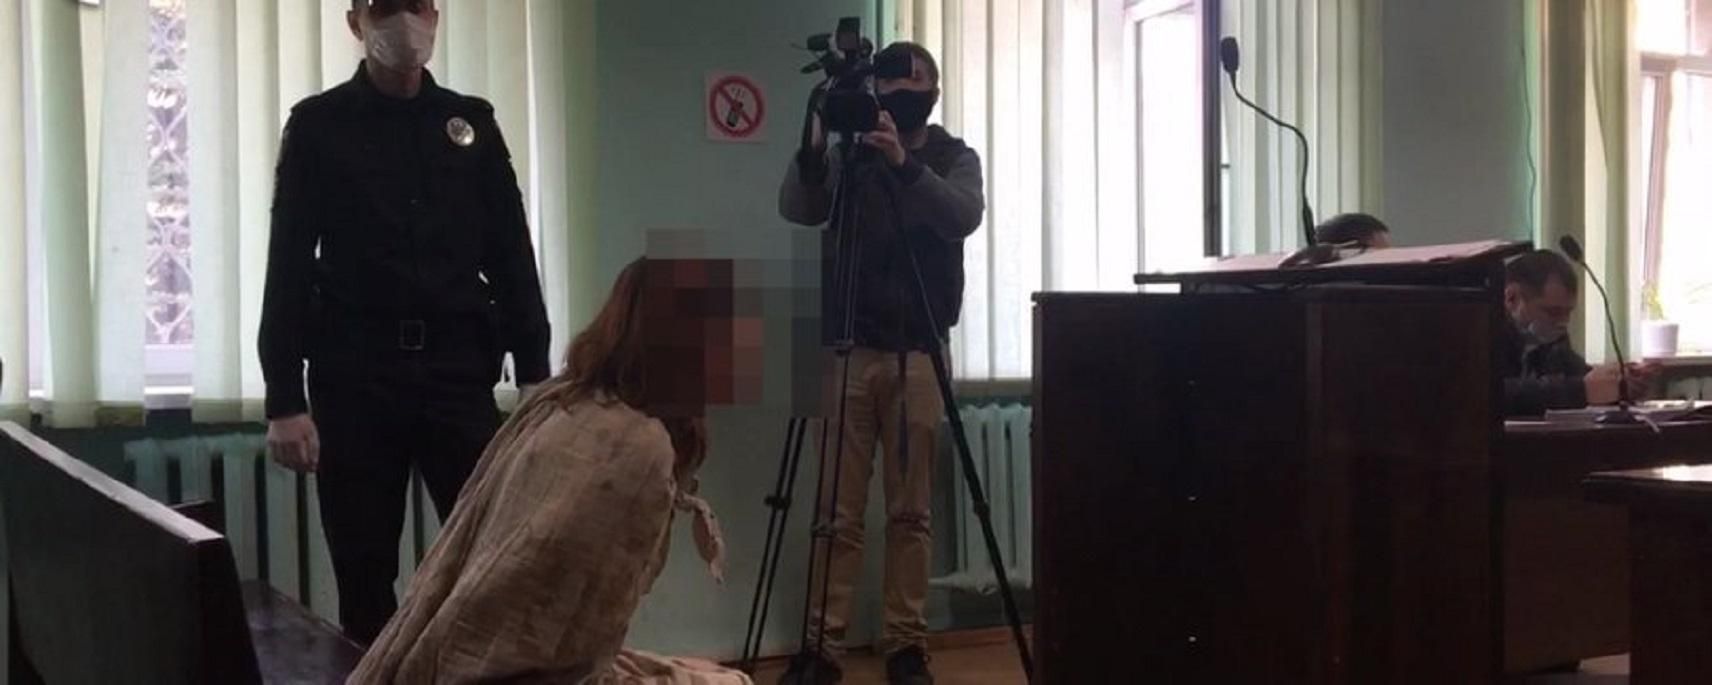 Убийство в Харькове: женщину, которая ходила голой с головой ребенка в пакете, взяли под стражу